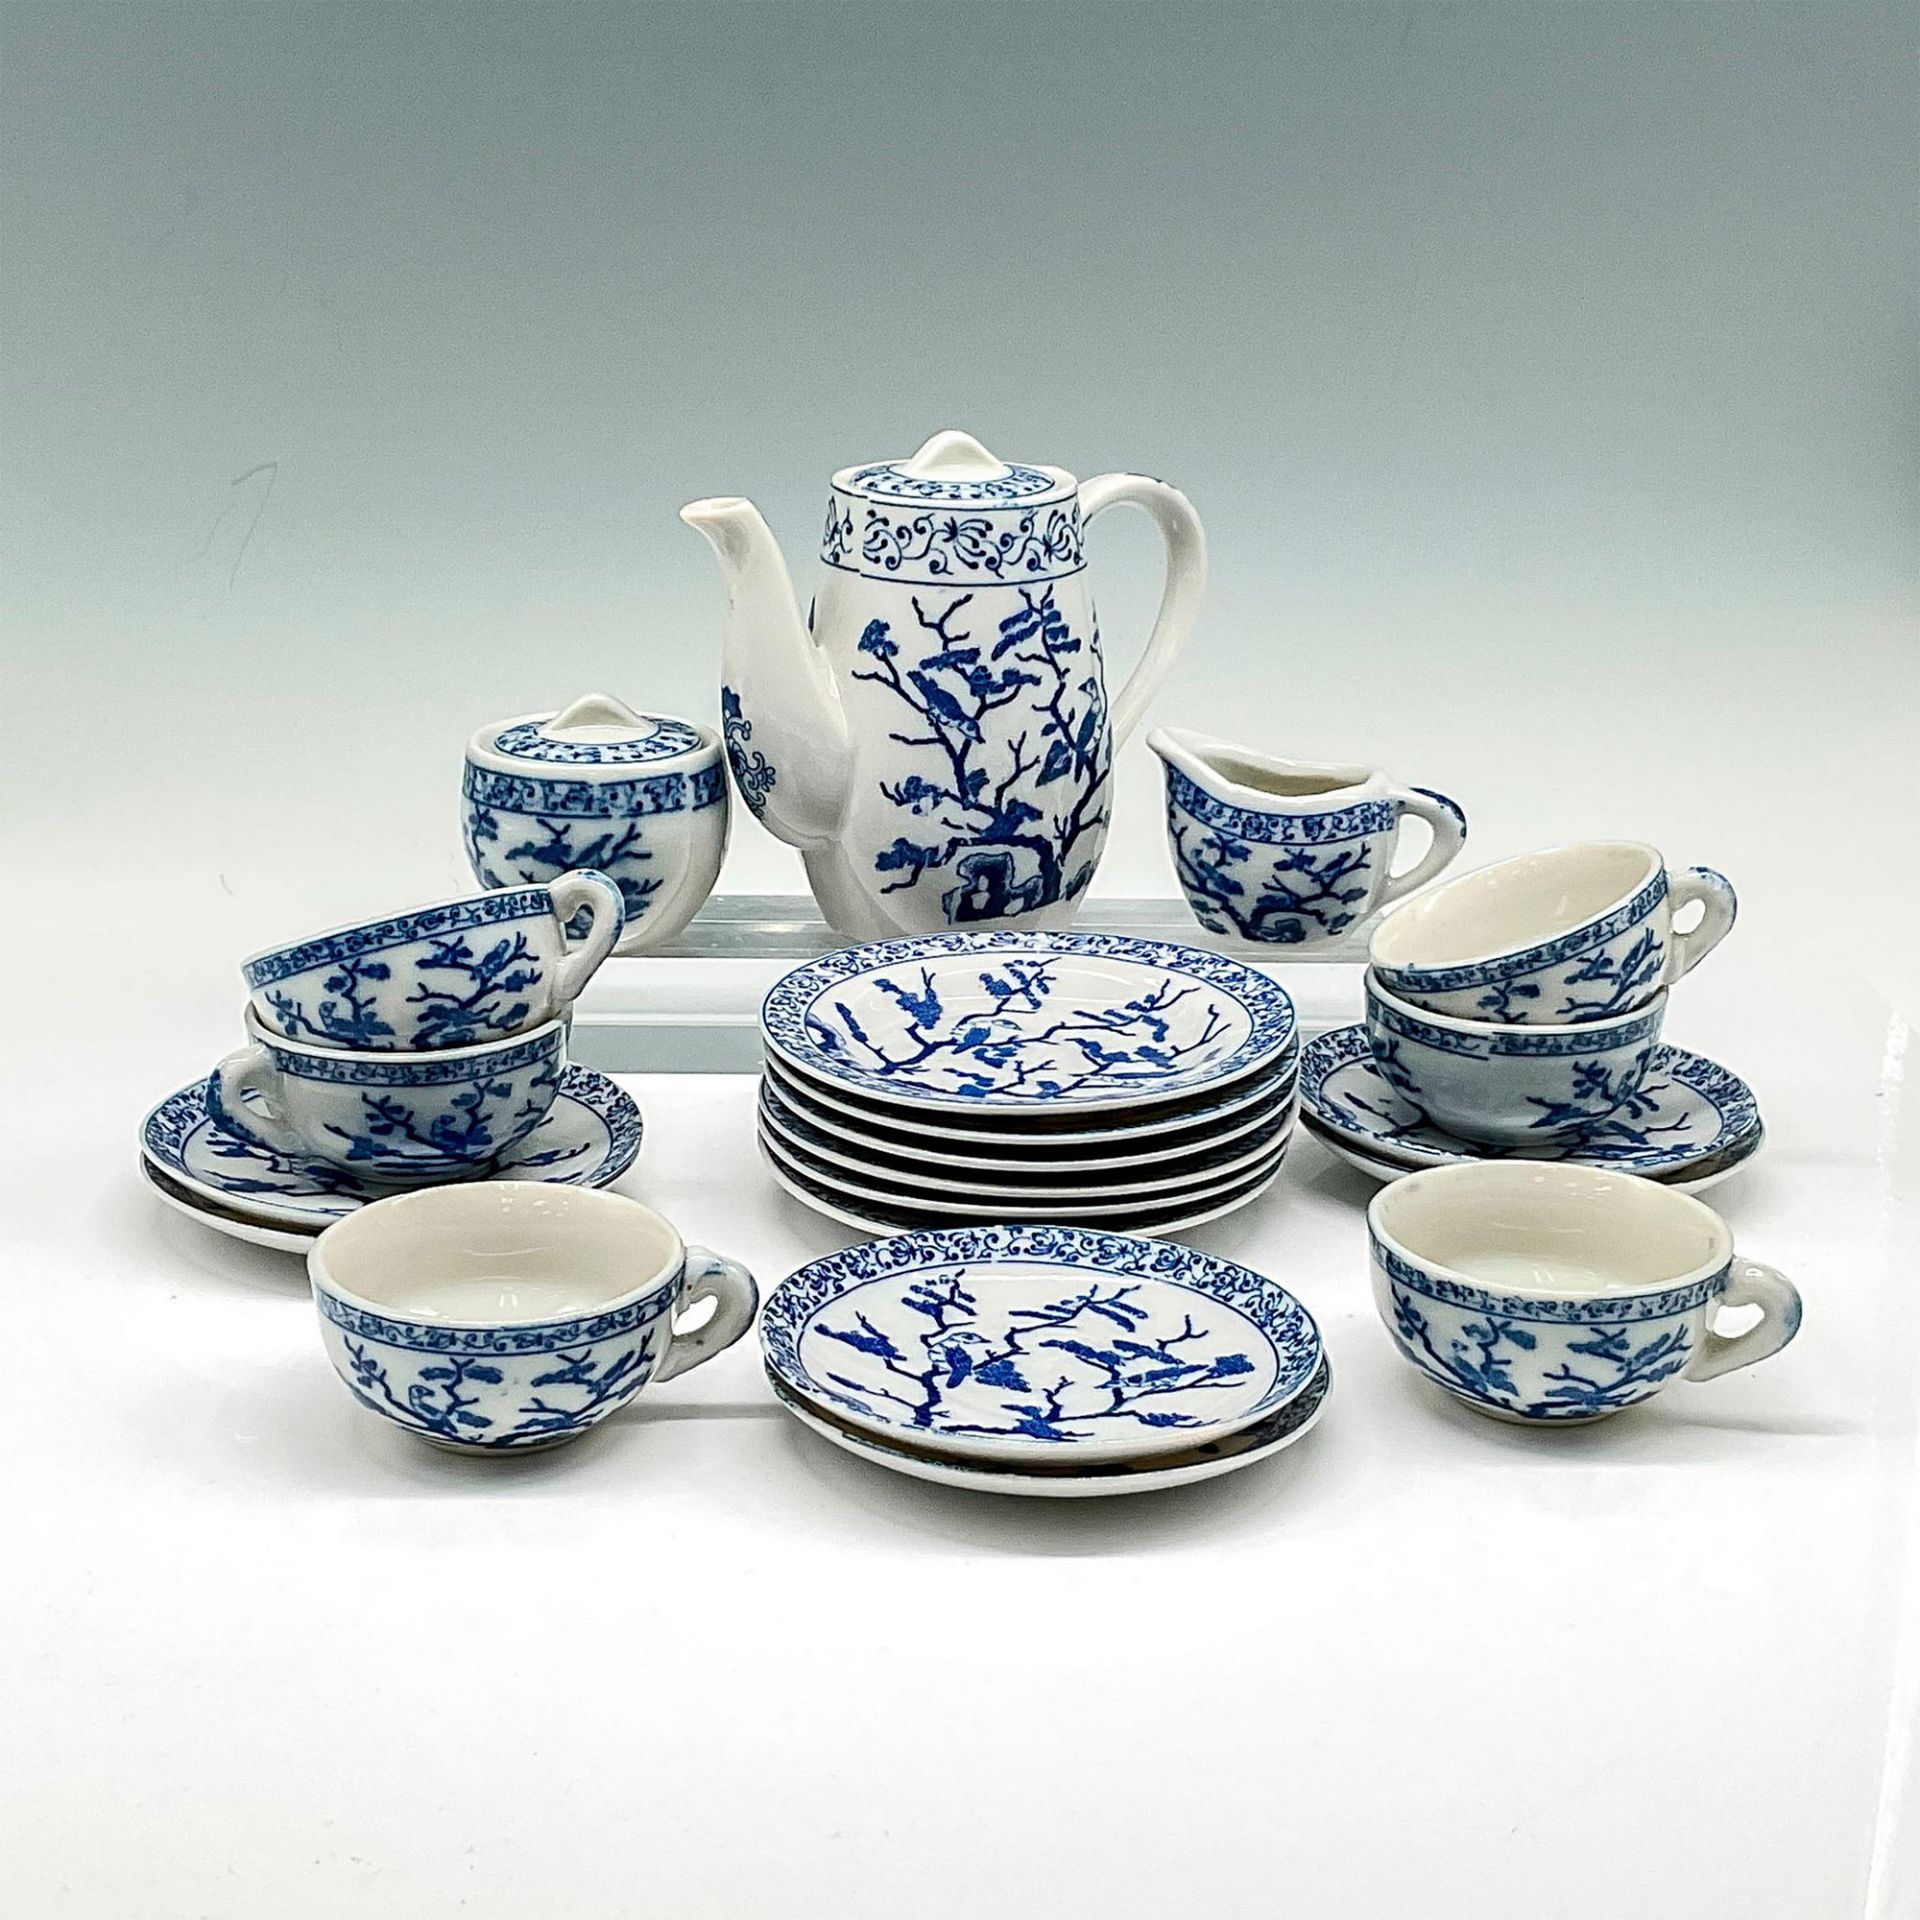 17pc Vintage Collectible Porcelain Child's Tea Set